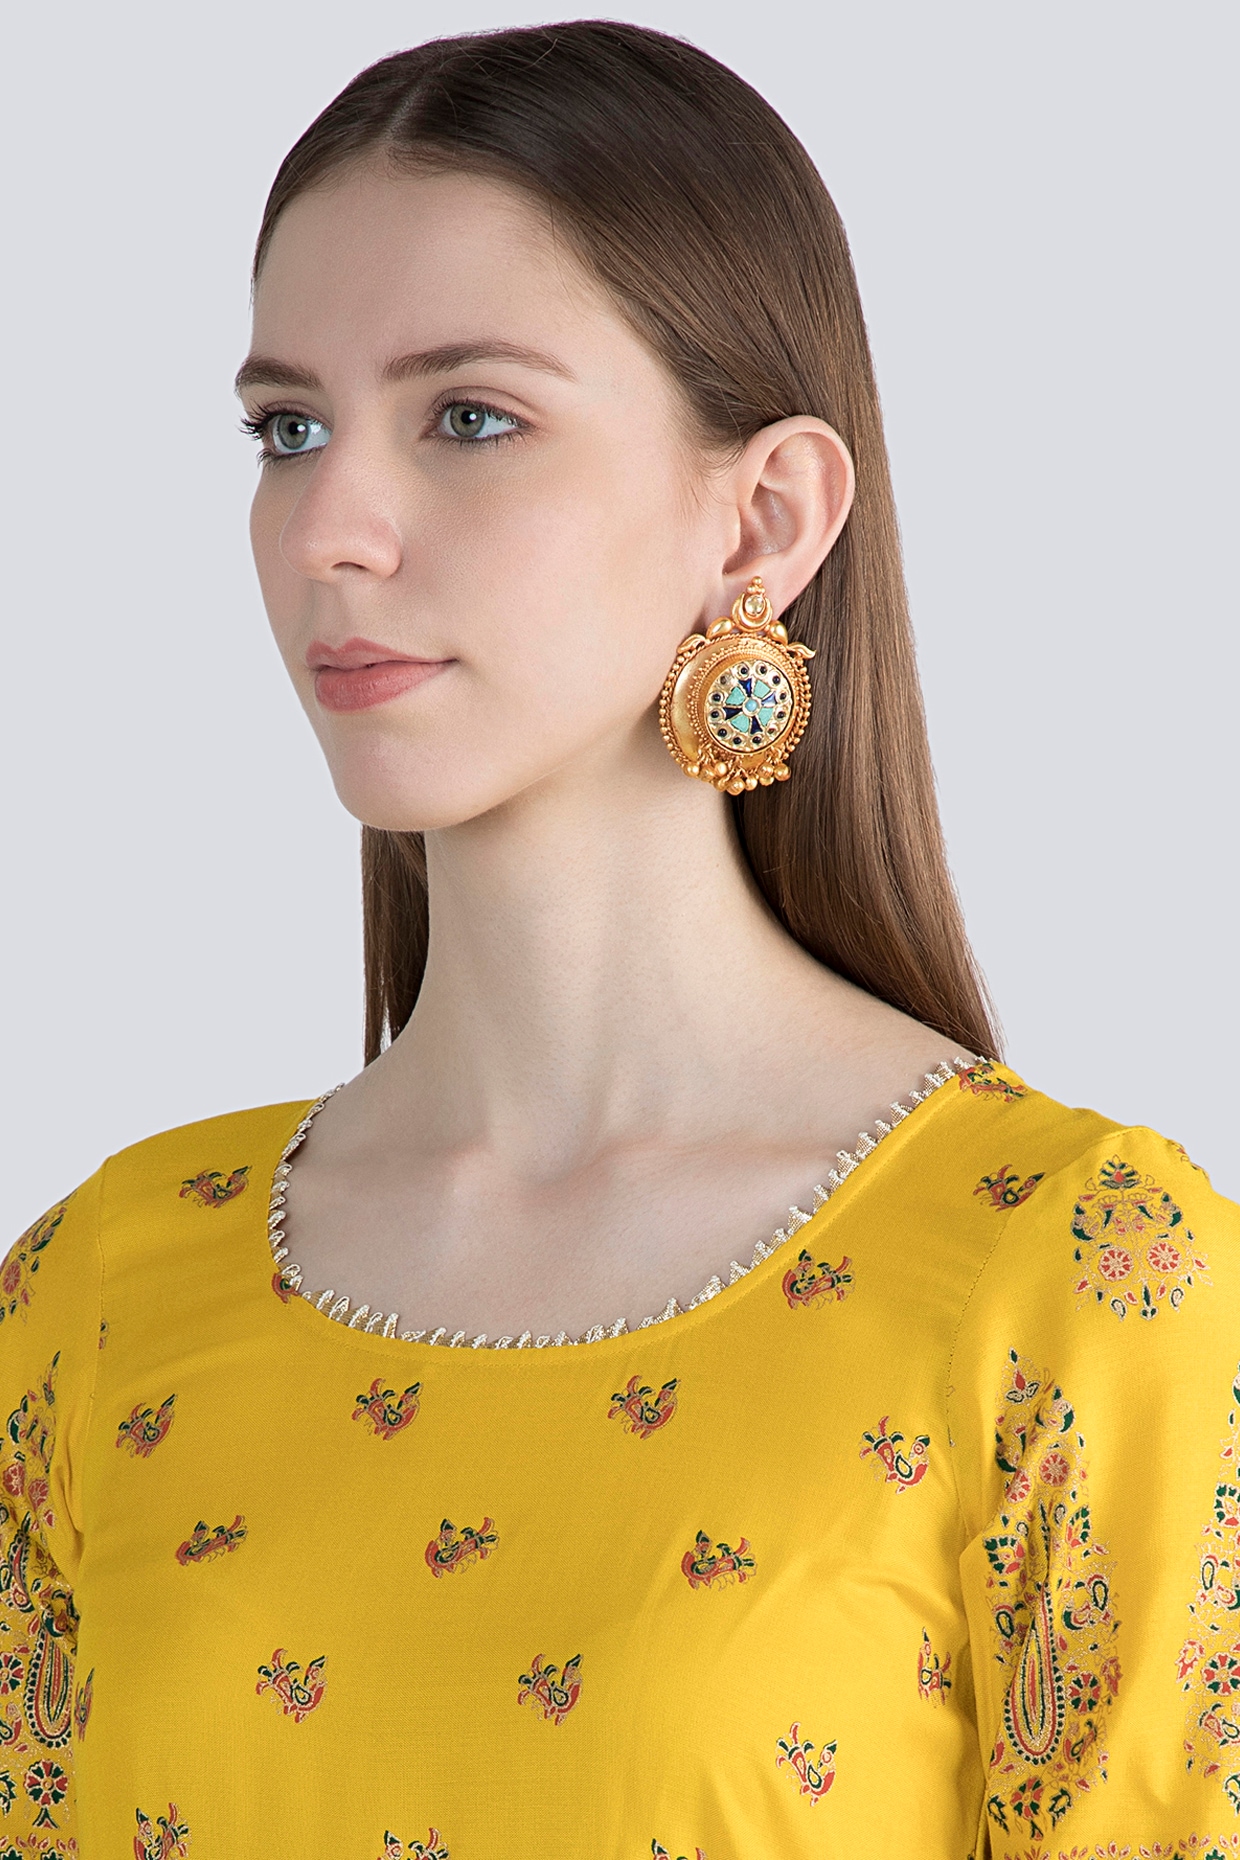 Vintage Style Art Nouveau Gold Earrings for Women, 9k /14k Solid Gold Lace  Drop Earrings, Garnet Birthstones Earrings, Gemstones Earrings. - Etsy